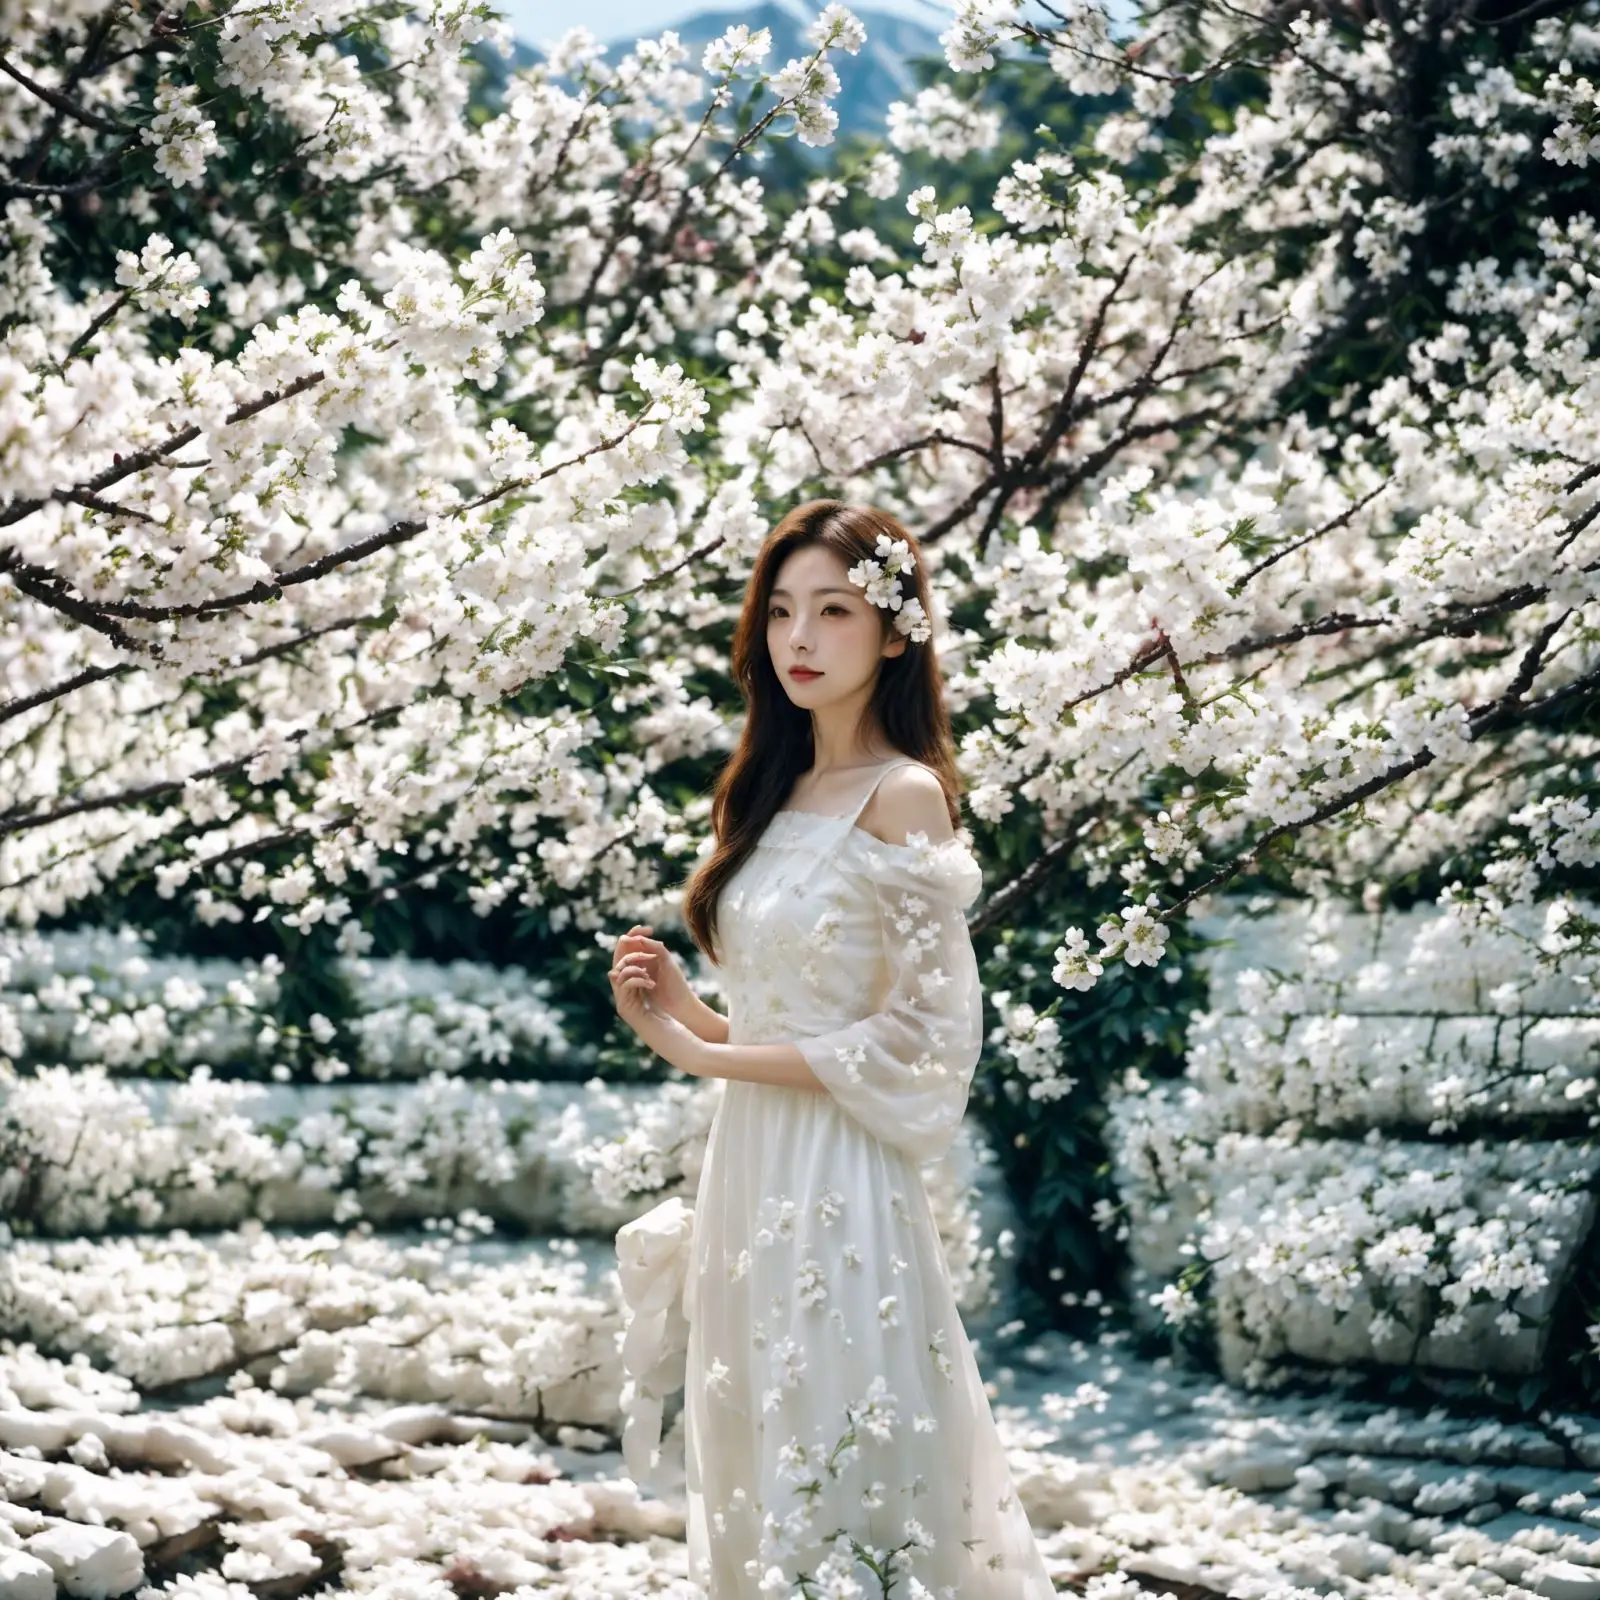 Blossom de cerejeira artificial feito a mão para decoração de casamento, flores falsas de sakura DIY personalizadas